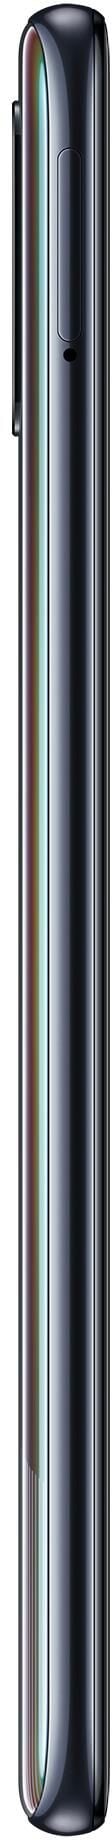 Samsung Galaxy A51 64GB Black